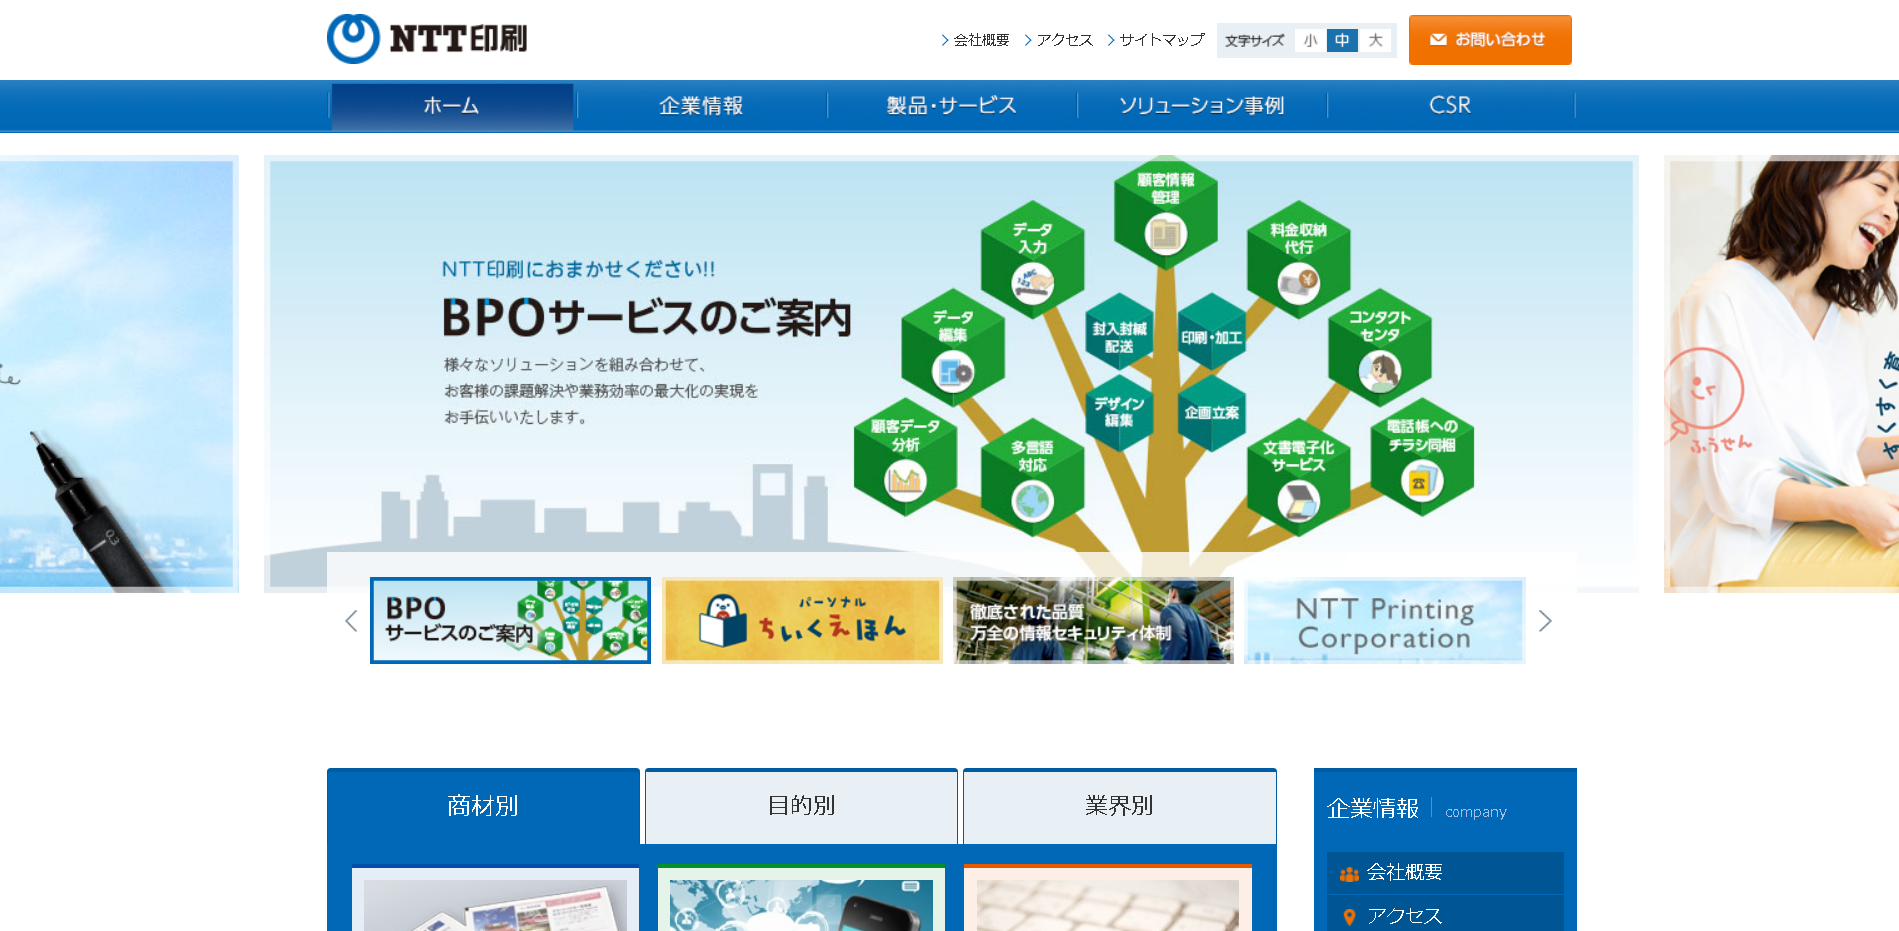 NTT印刷株式会社のNTT印刷株式会社サービス